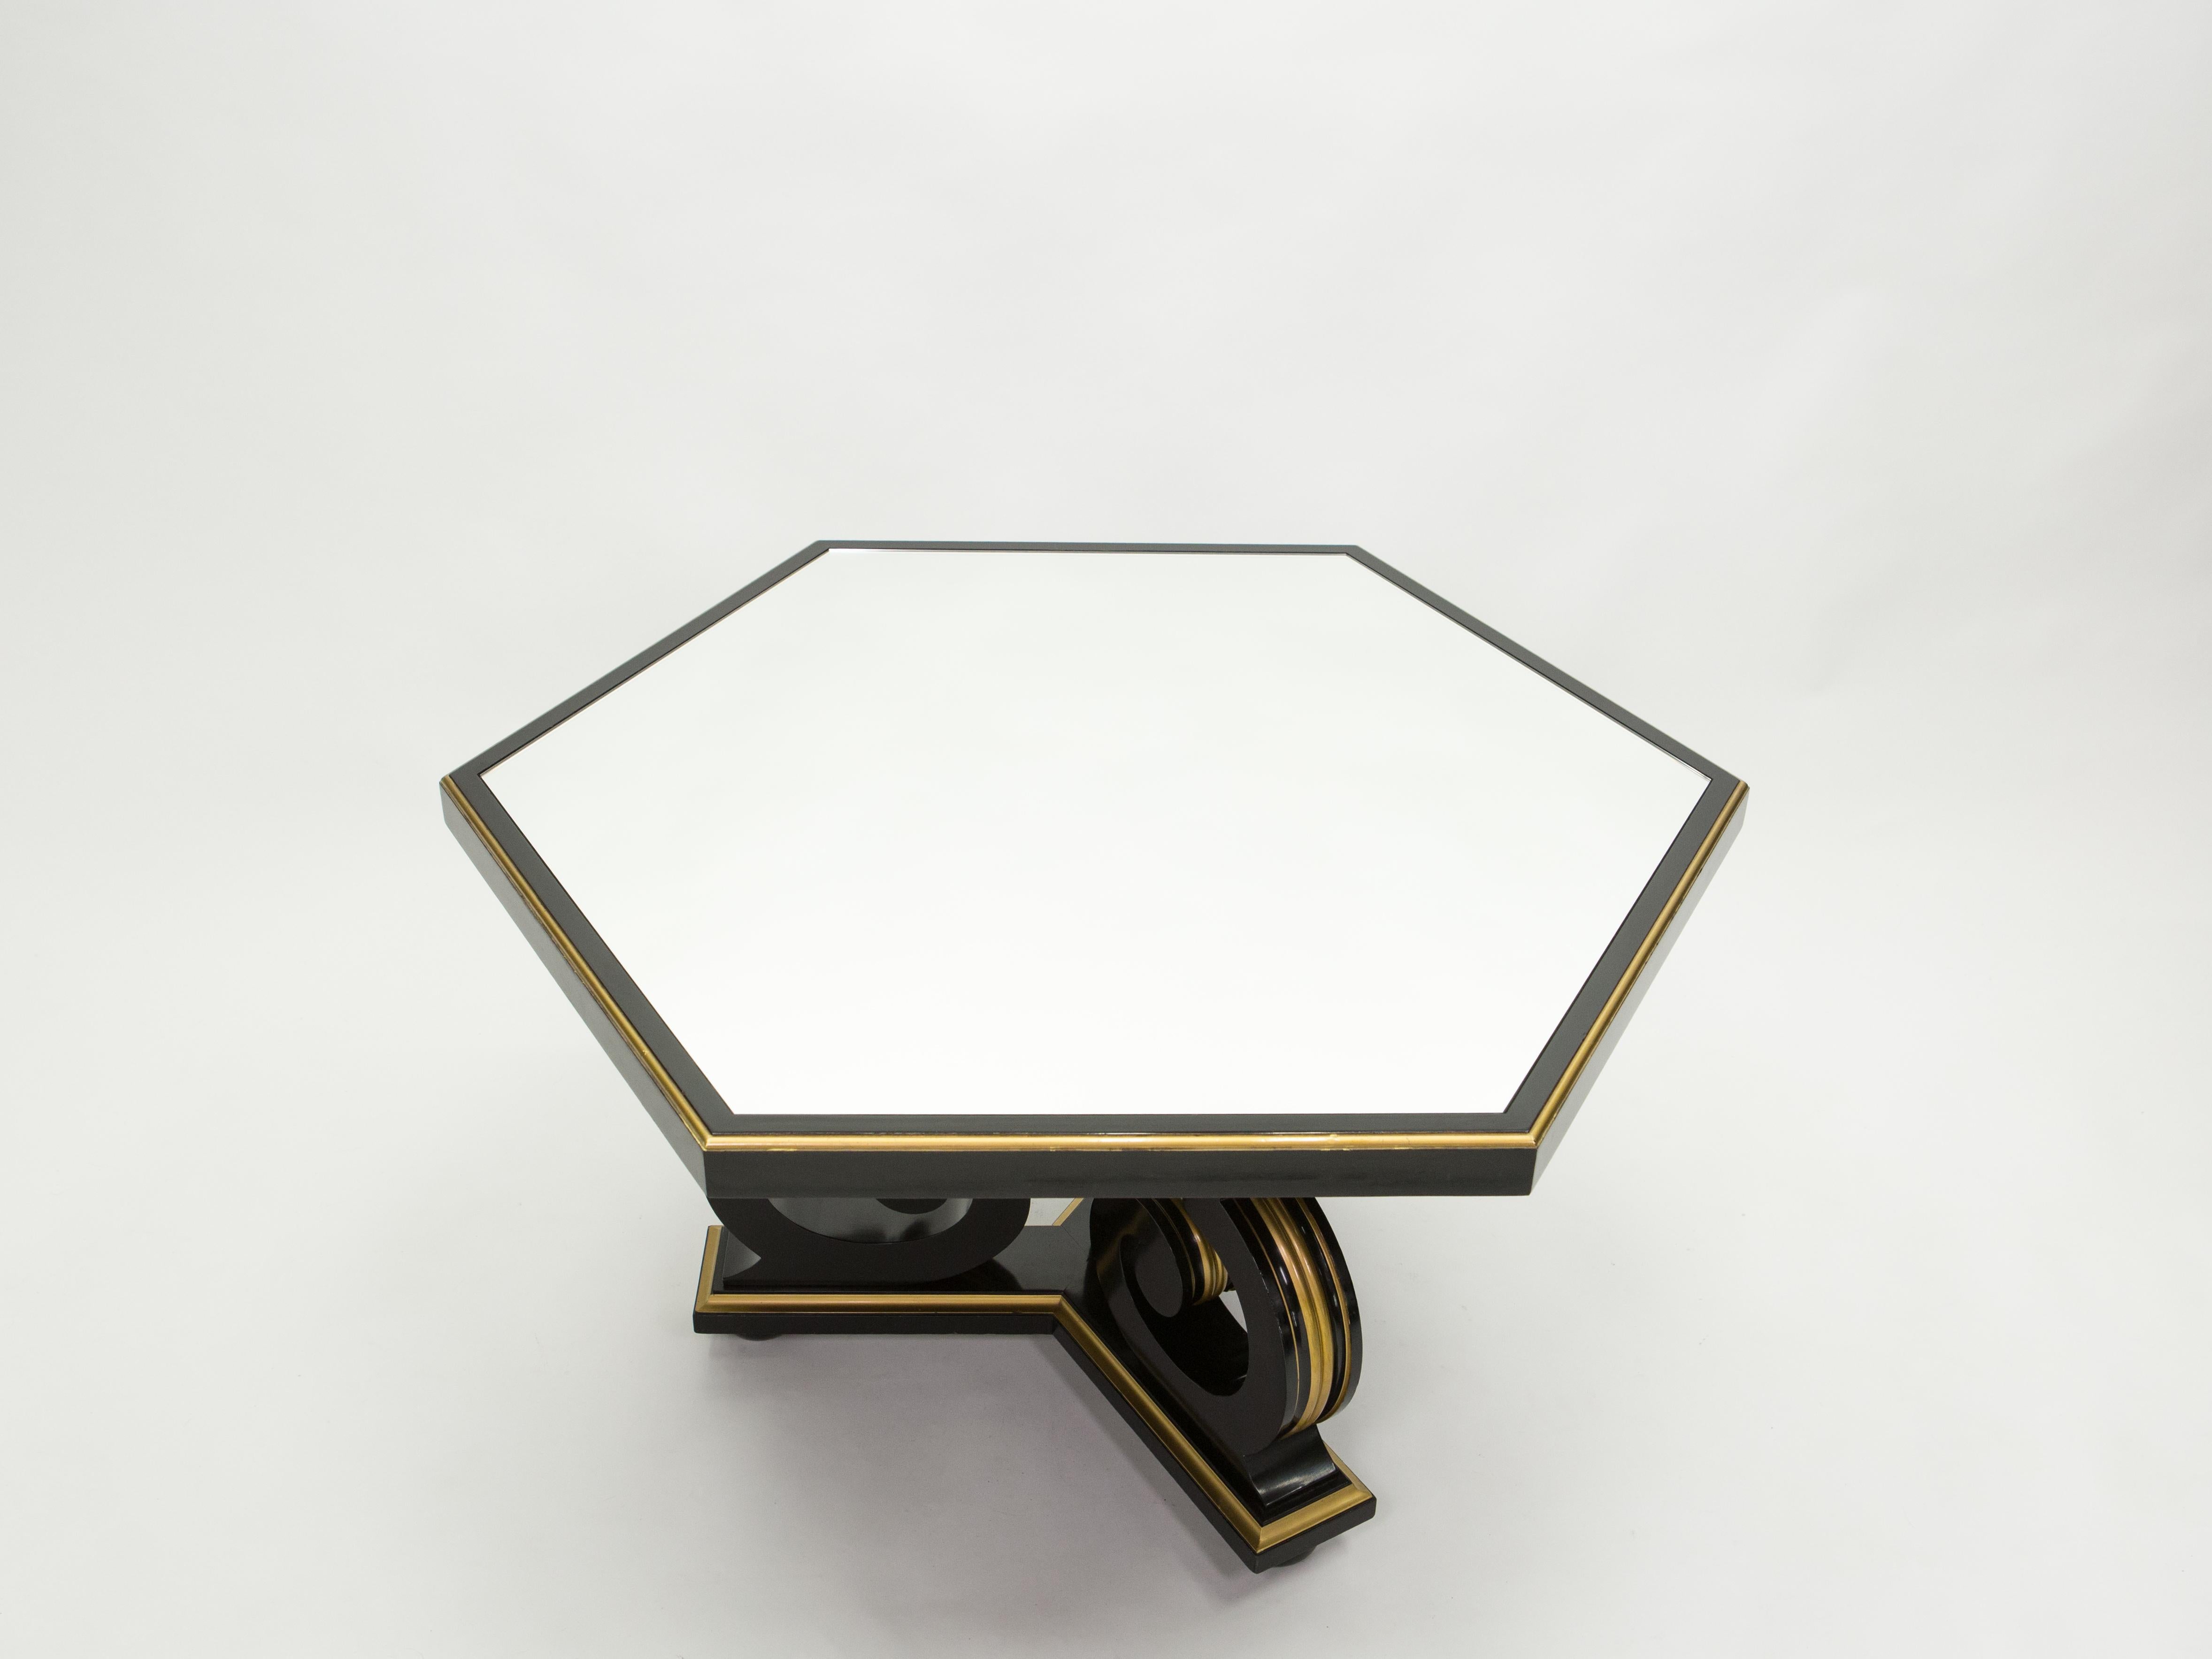 Cette luxueuse table hexagonale de salle à manger ou de centre est signée par le designer néoclassique français Maurice Hirsch, et a été fabriquée comme table de bridge au début des années 1970. Typique du designer, cette pièce s'inspire du XIXe